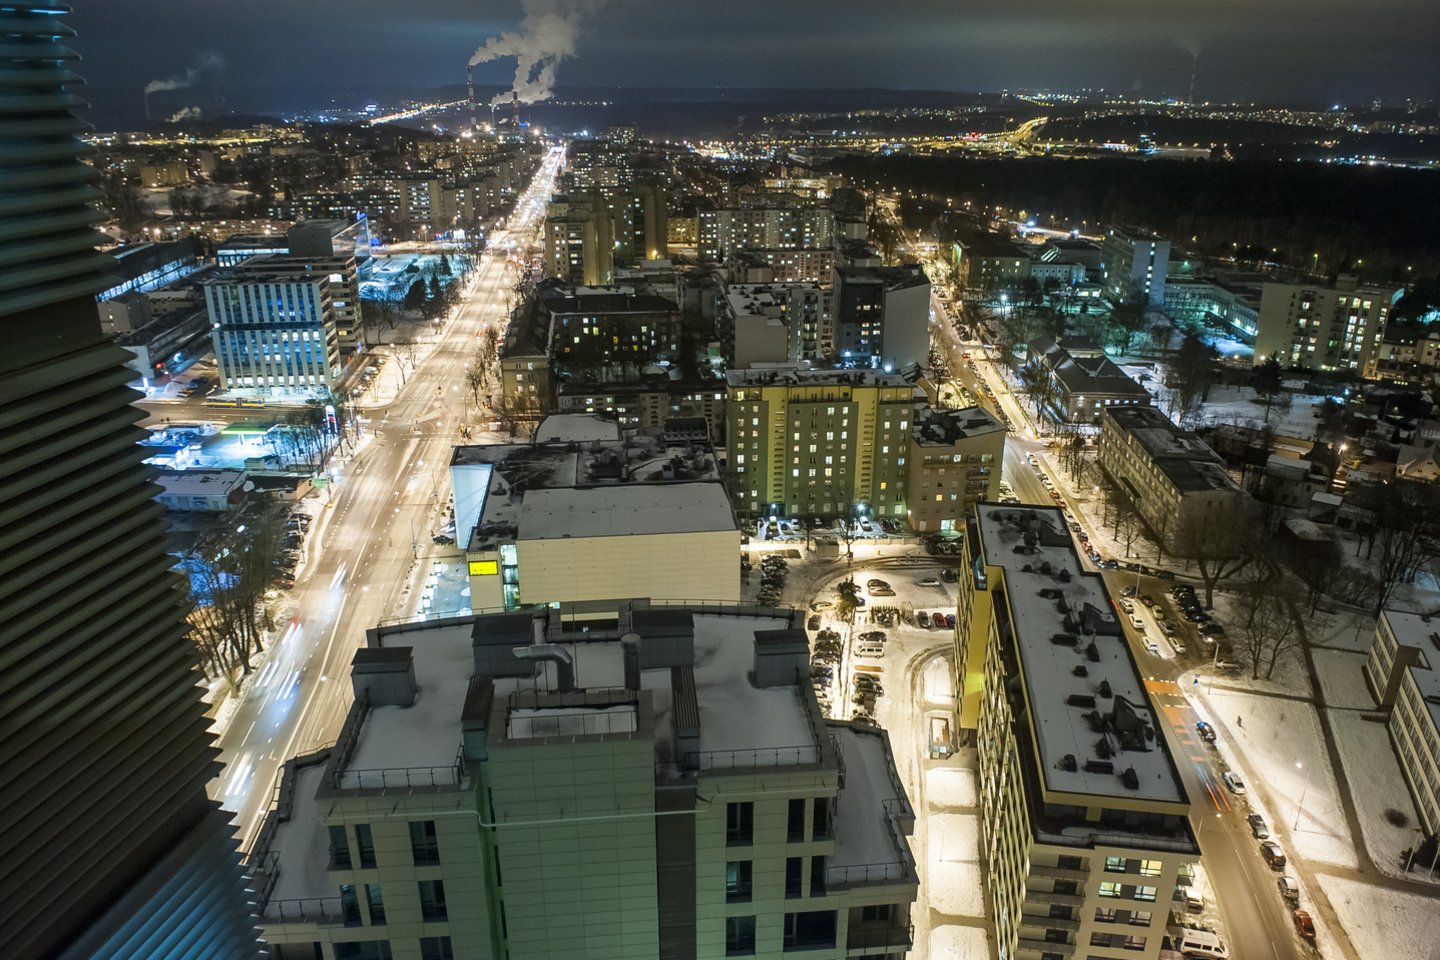 Naujai patvirtintame Vilniaus bendrajame plane numatyta, kad pietinėje miesto dalyje esantis Vilkpėdės mikrorajonas taps prioritetine miesto plėtros teritorija, o ateityje pramoninis kvartalas taps visaverčiu gyvybingu miesto rajonu.<br>V.Ščiavinsko nuotr.